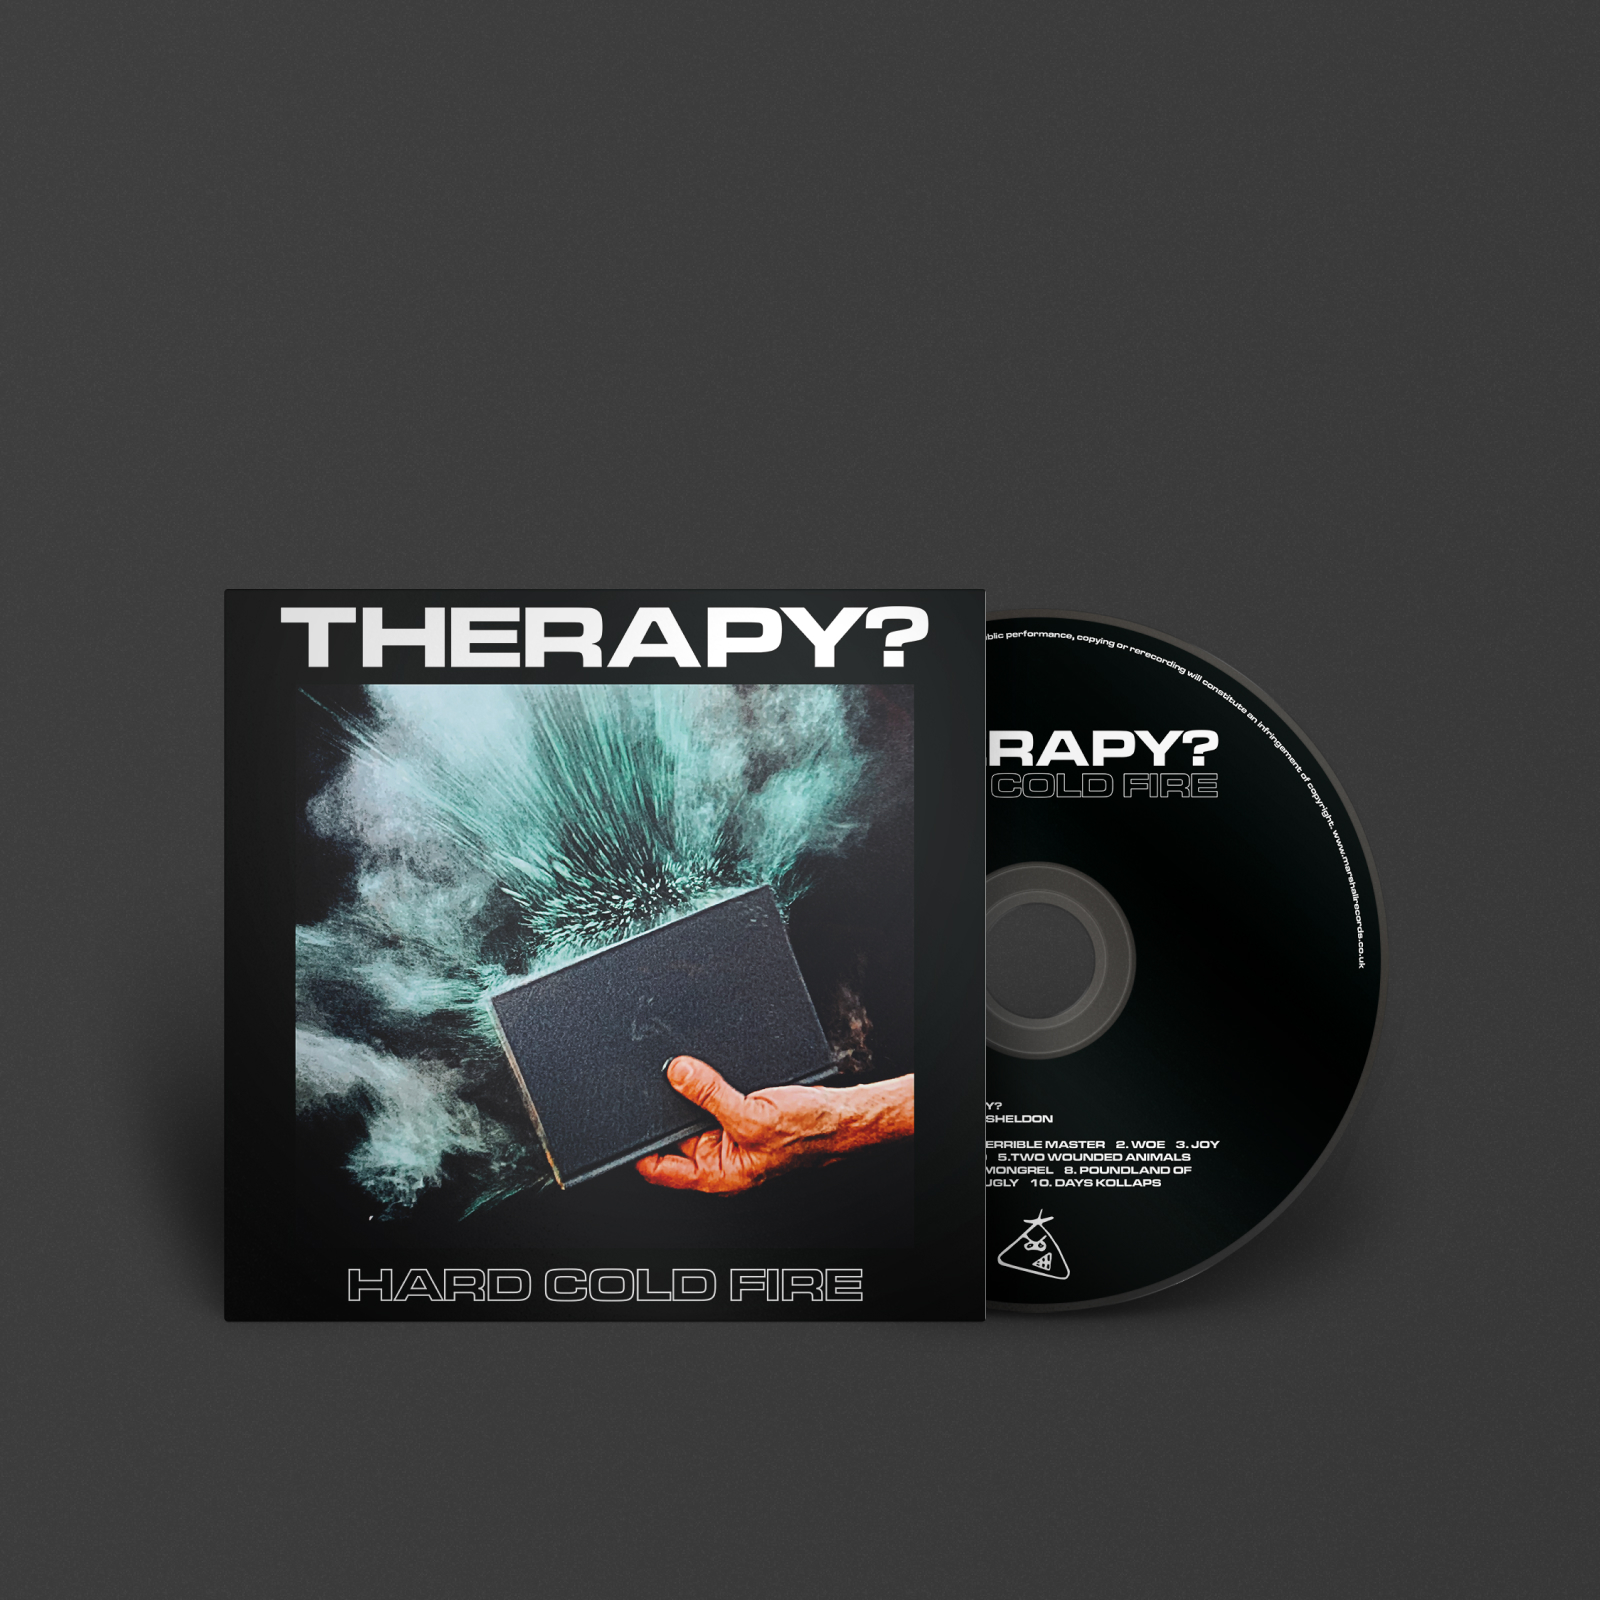 CD 'Hard Cold Fire' del grupo 'Therapy?